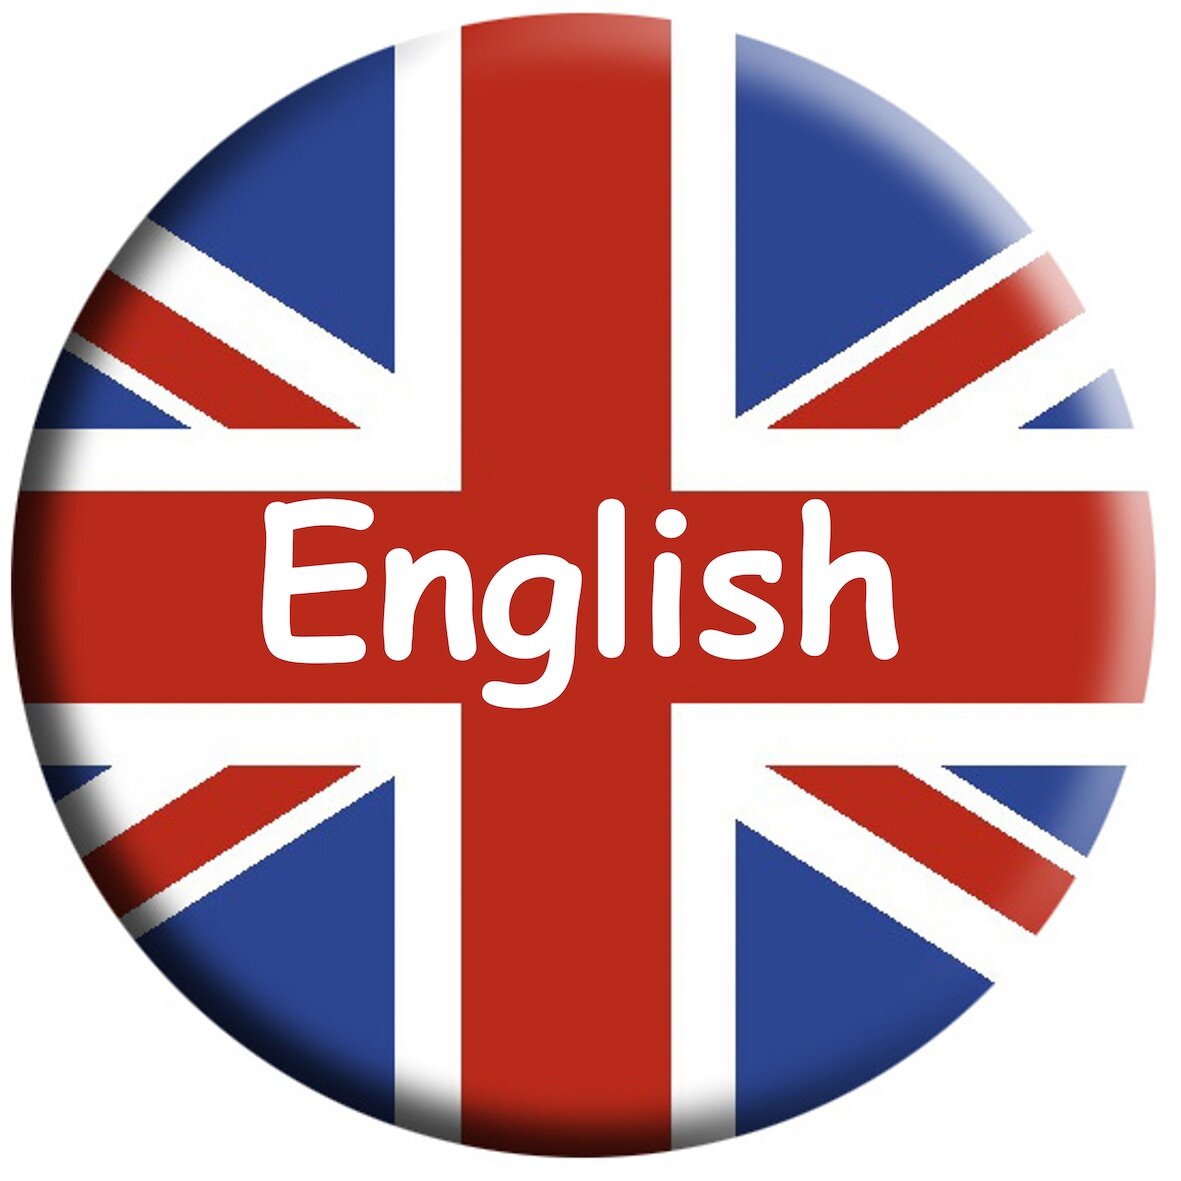 Английский картинки. Английский язык. Английский язык Международный язык. Английский мировой язык. Английский глобальный язык.